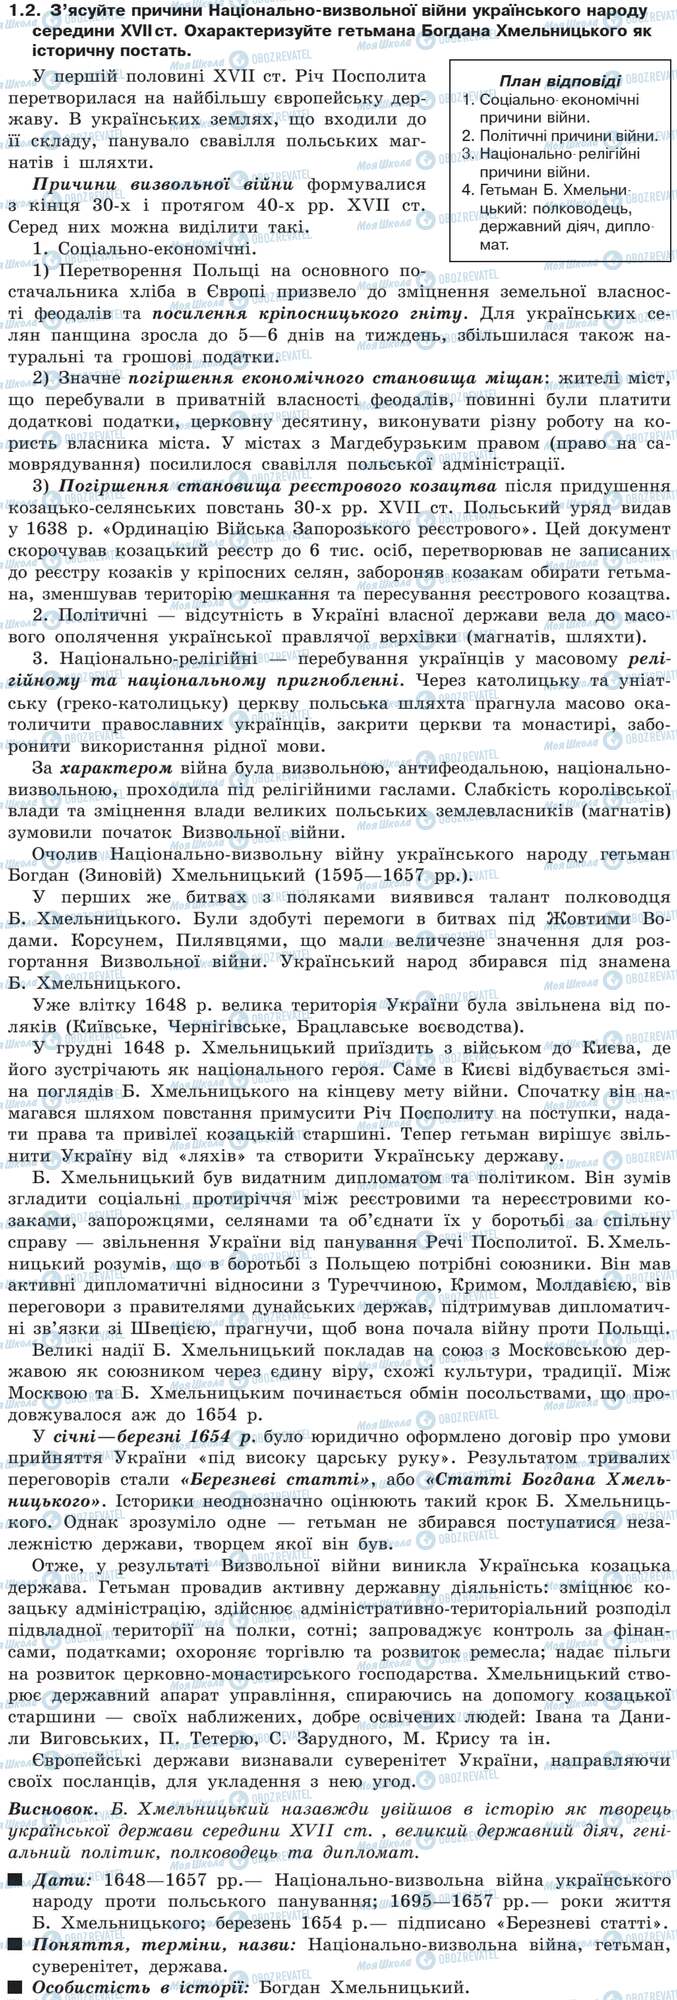 ДПА История Украины 9 класс страница 1.2